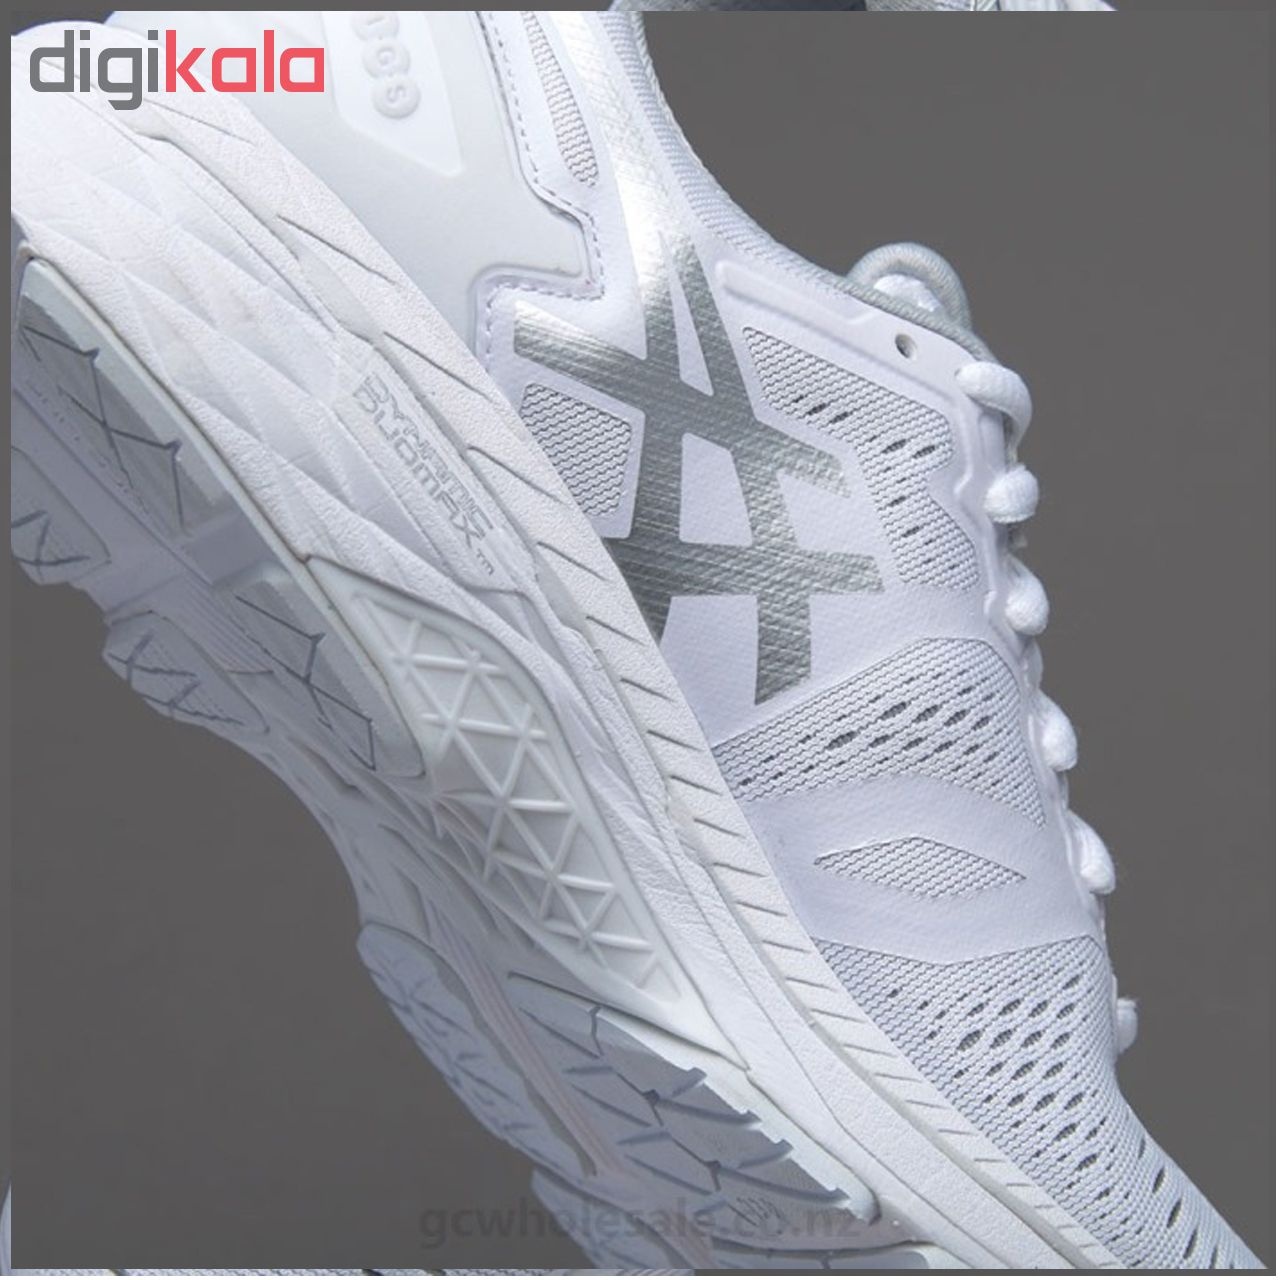 کفش ورزشی مخصوص دویدن و پیاده روی مردانه مدل Gel Kayano   کد اصلی T643N12